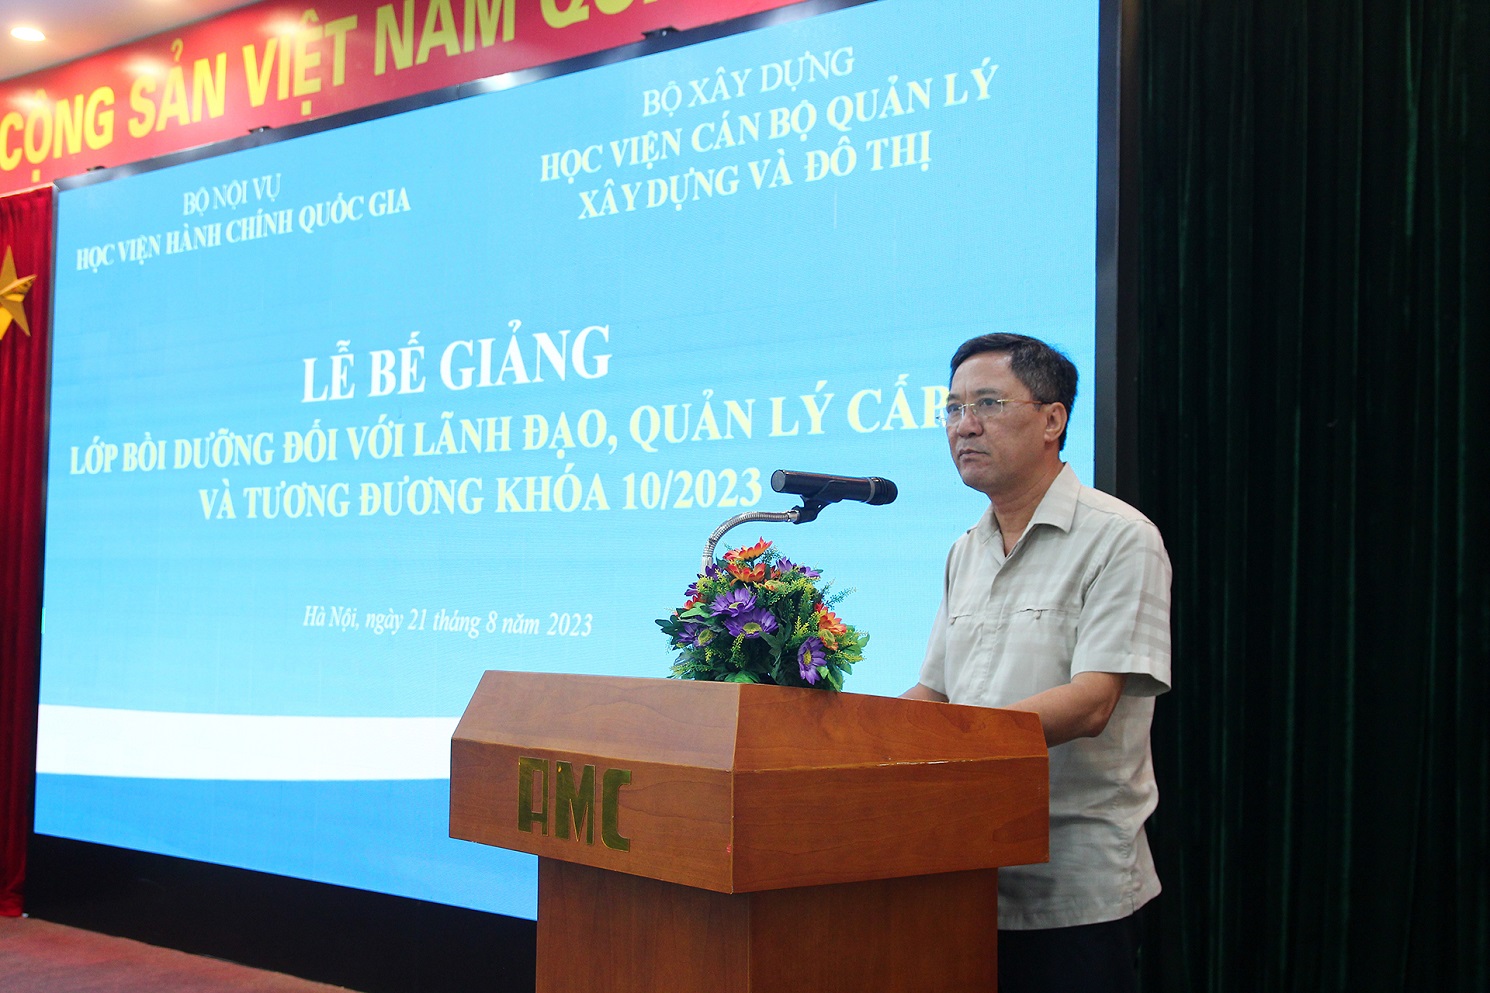 2. TS. Trần Hữu Hà, Giám đốc Học viện Cán bộ quản lý xây dựng và đô thị phát biểu tại lễ bế giảng